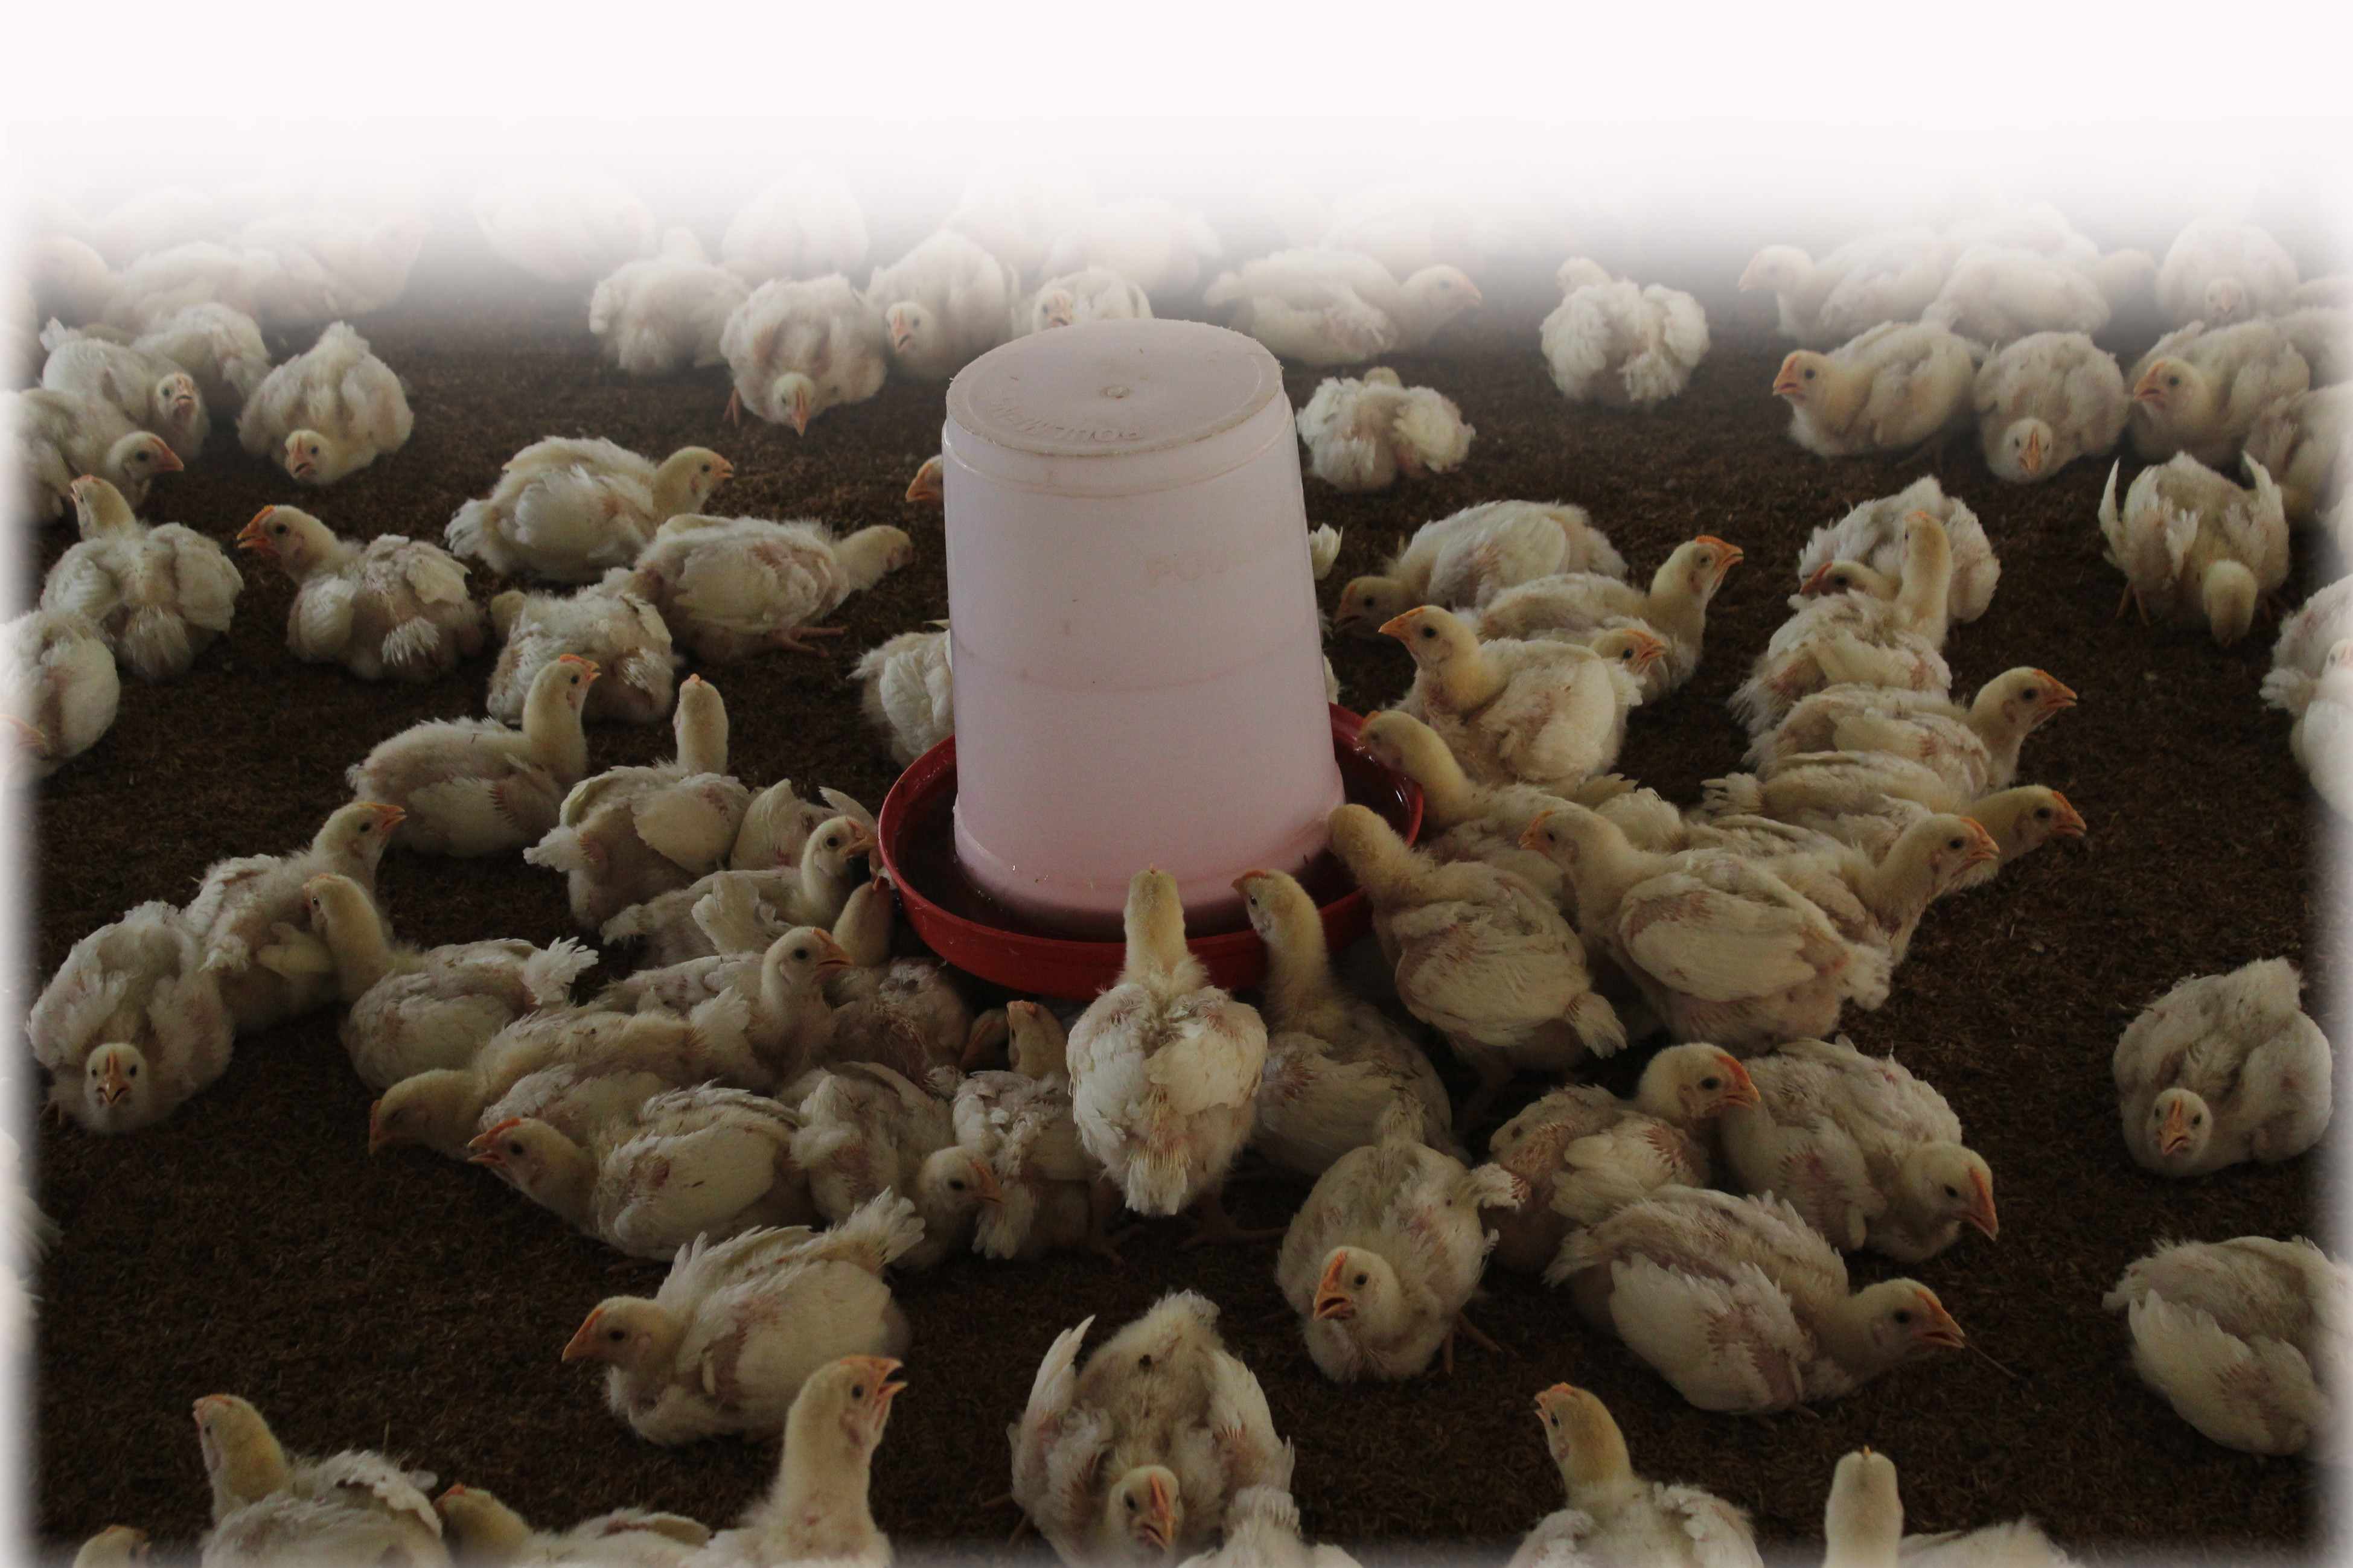 25 लाख परिवारों के जीविका पर संकट, चिकन की बिक्री पर रोक से मुर्गीपालक परेशान